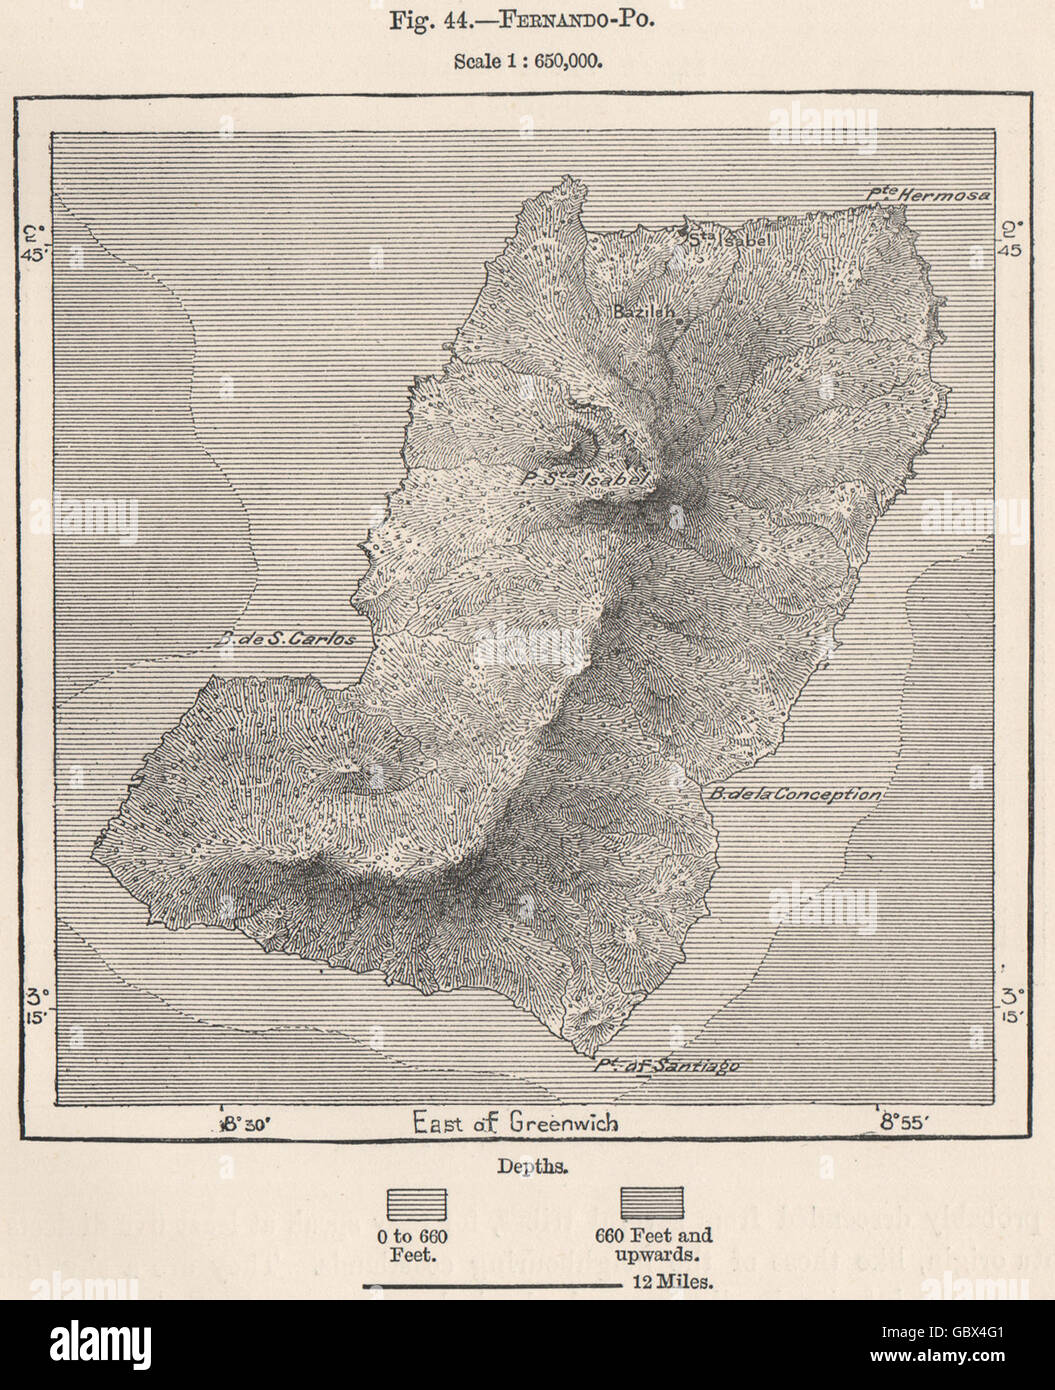 Fernando Po/Bioko(Bioko).Equatorial Guinea.South-West African Islands, 1885 map Stock Photo